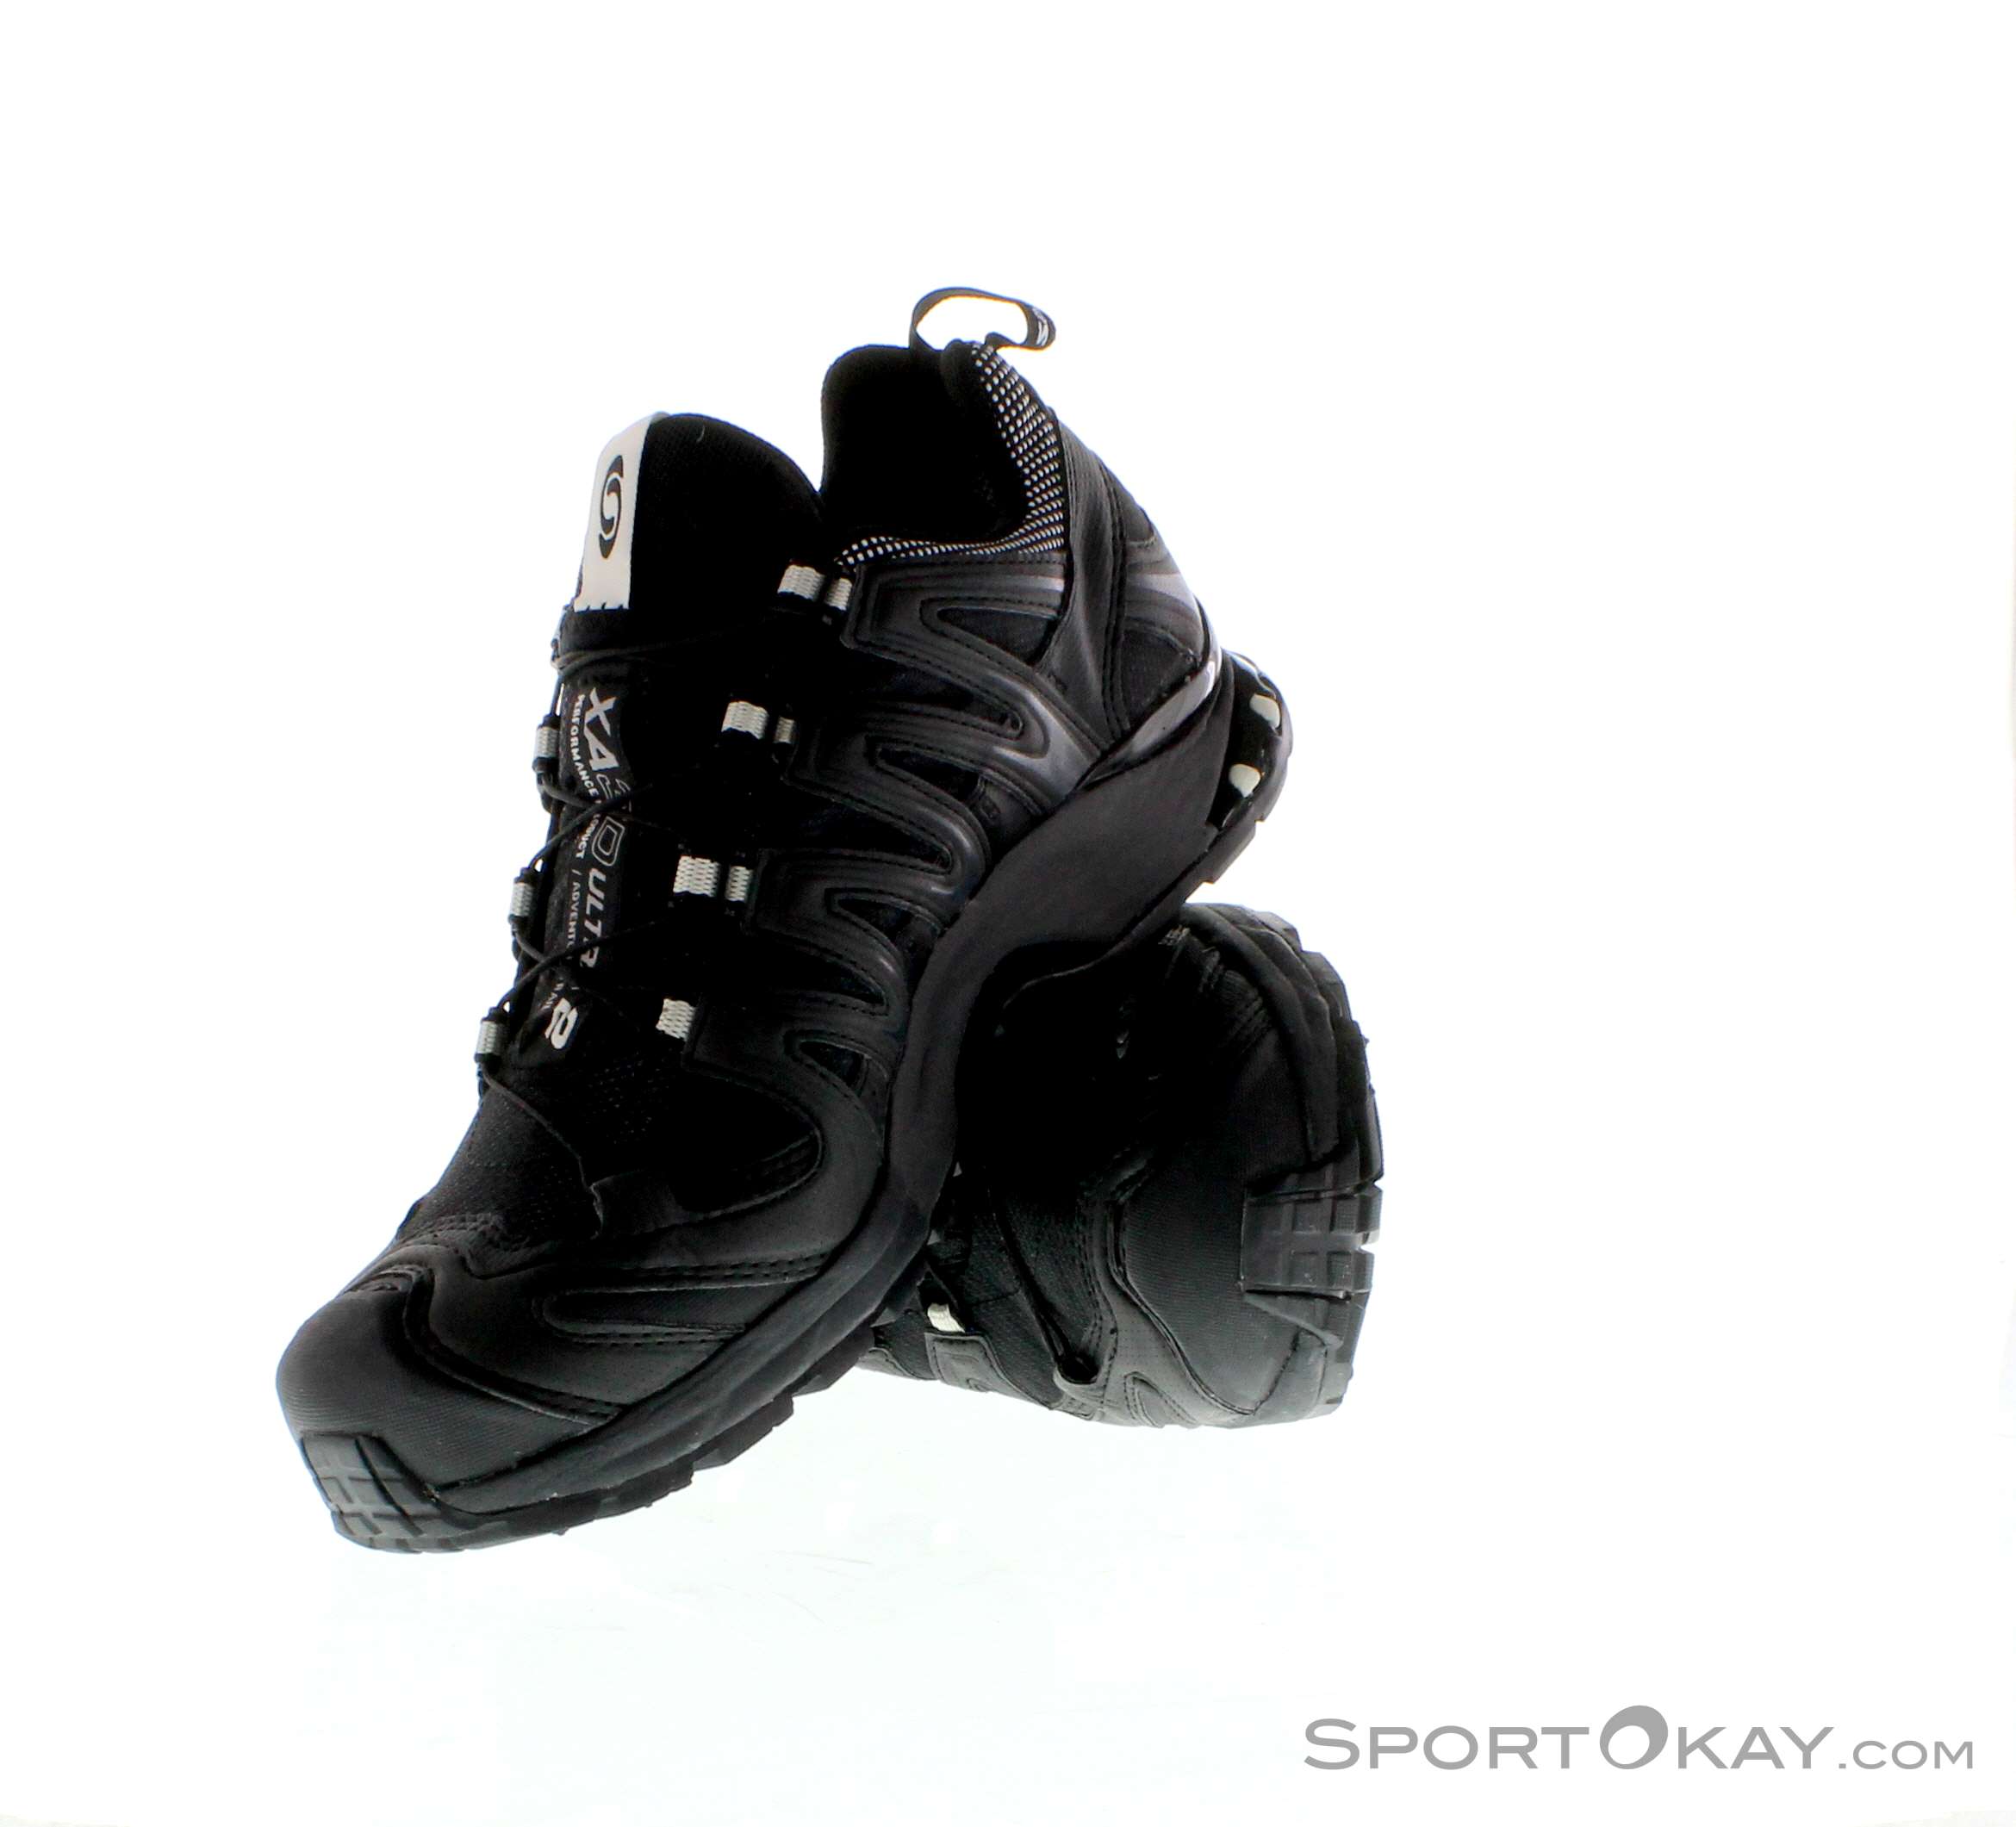 Salomon XA Pro 3D GTX Damen Traillaufschuhe Gore-Tex - Traillaufschuhe - Laufschuhe - Running - Alle